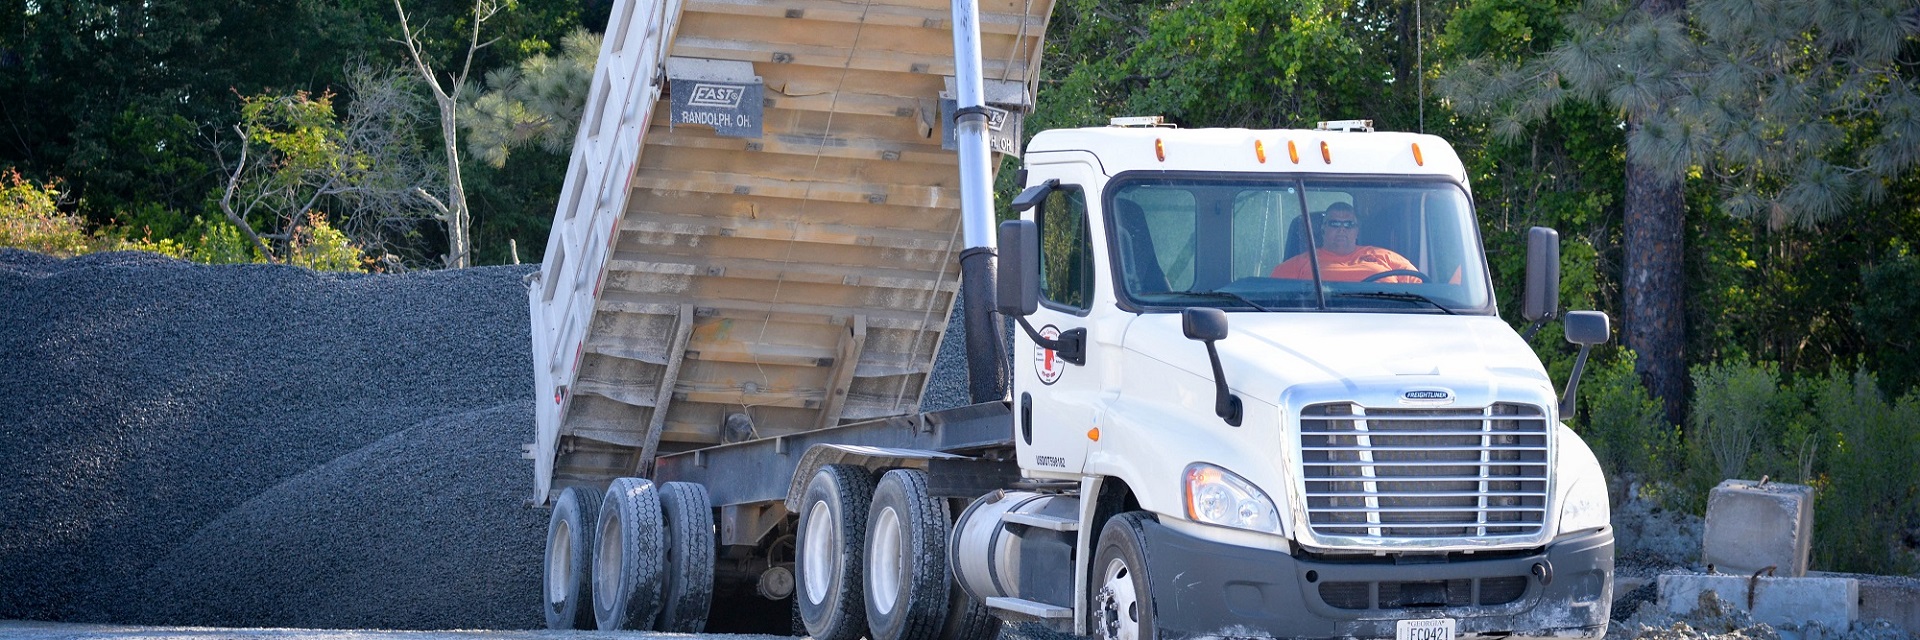 Mobile Concrete dump truck dumping gravel